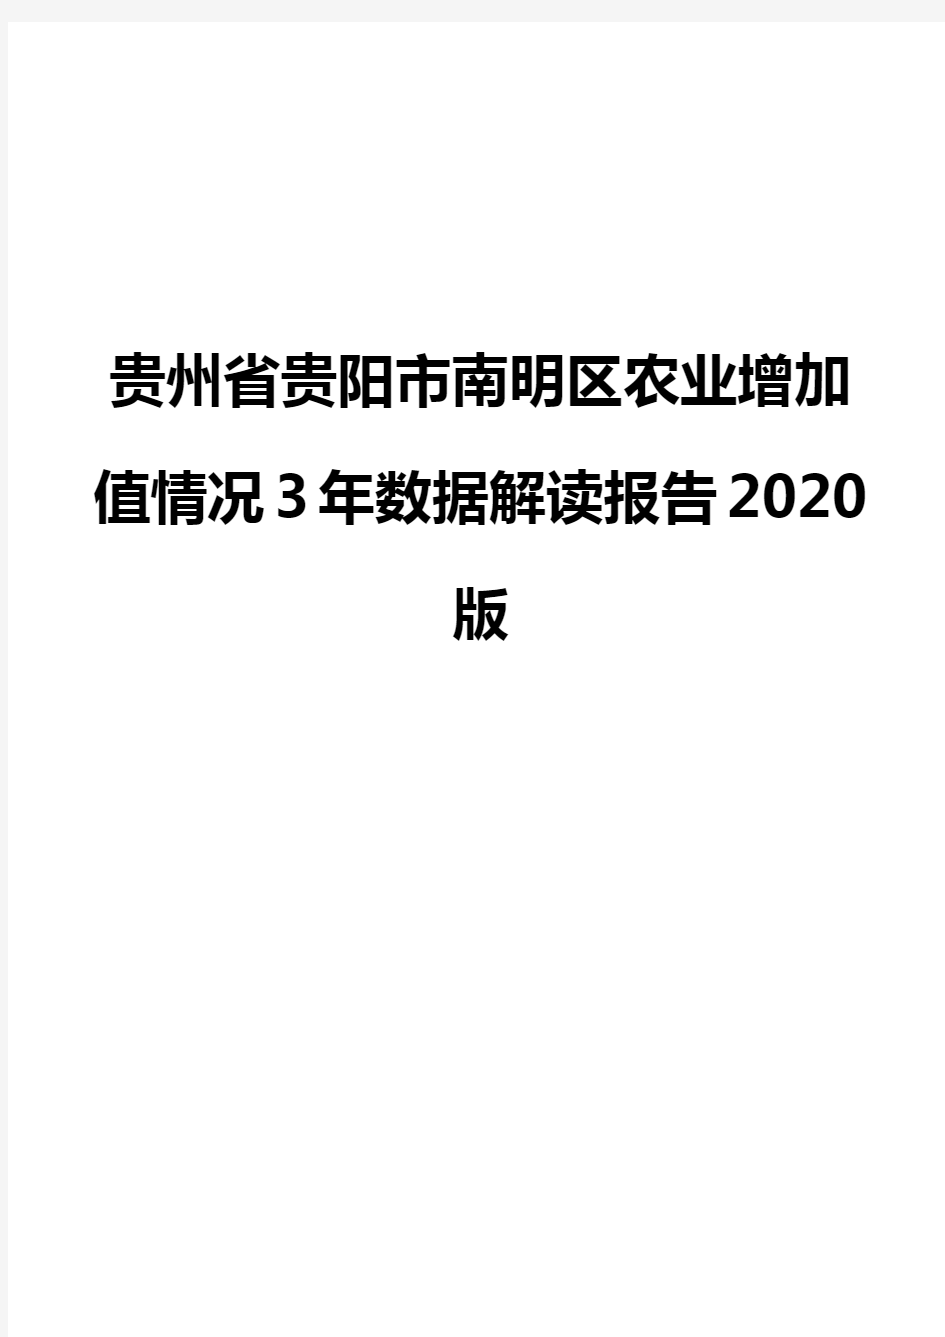 贵州省贵阳市南明区农业增加值情况3年数据解读报告2020版